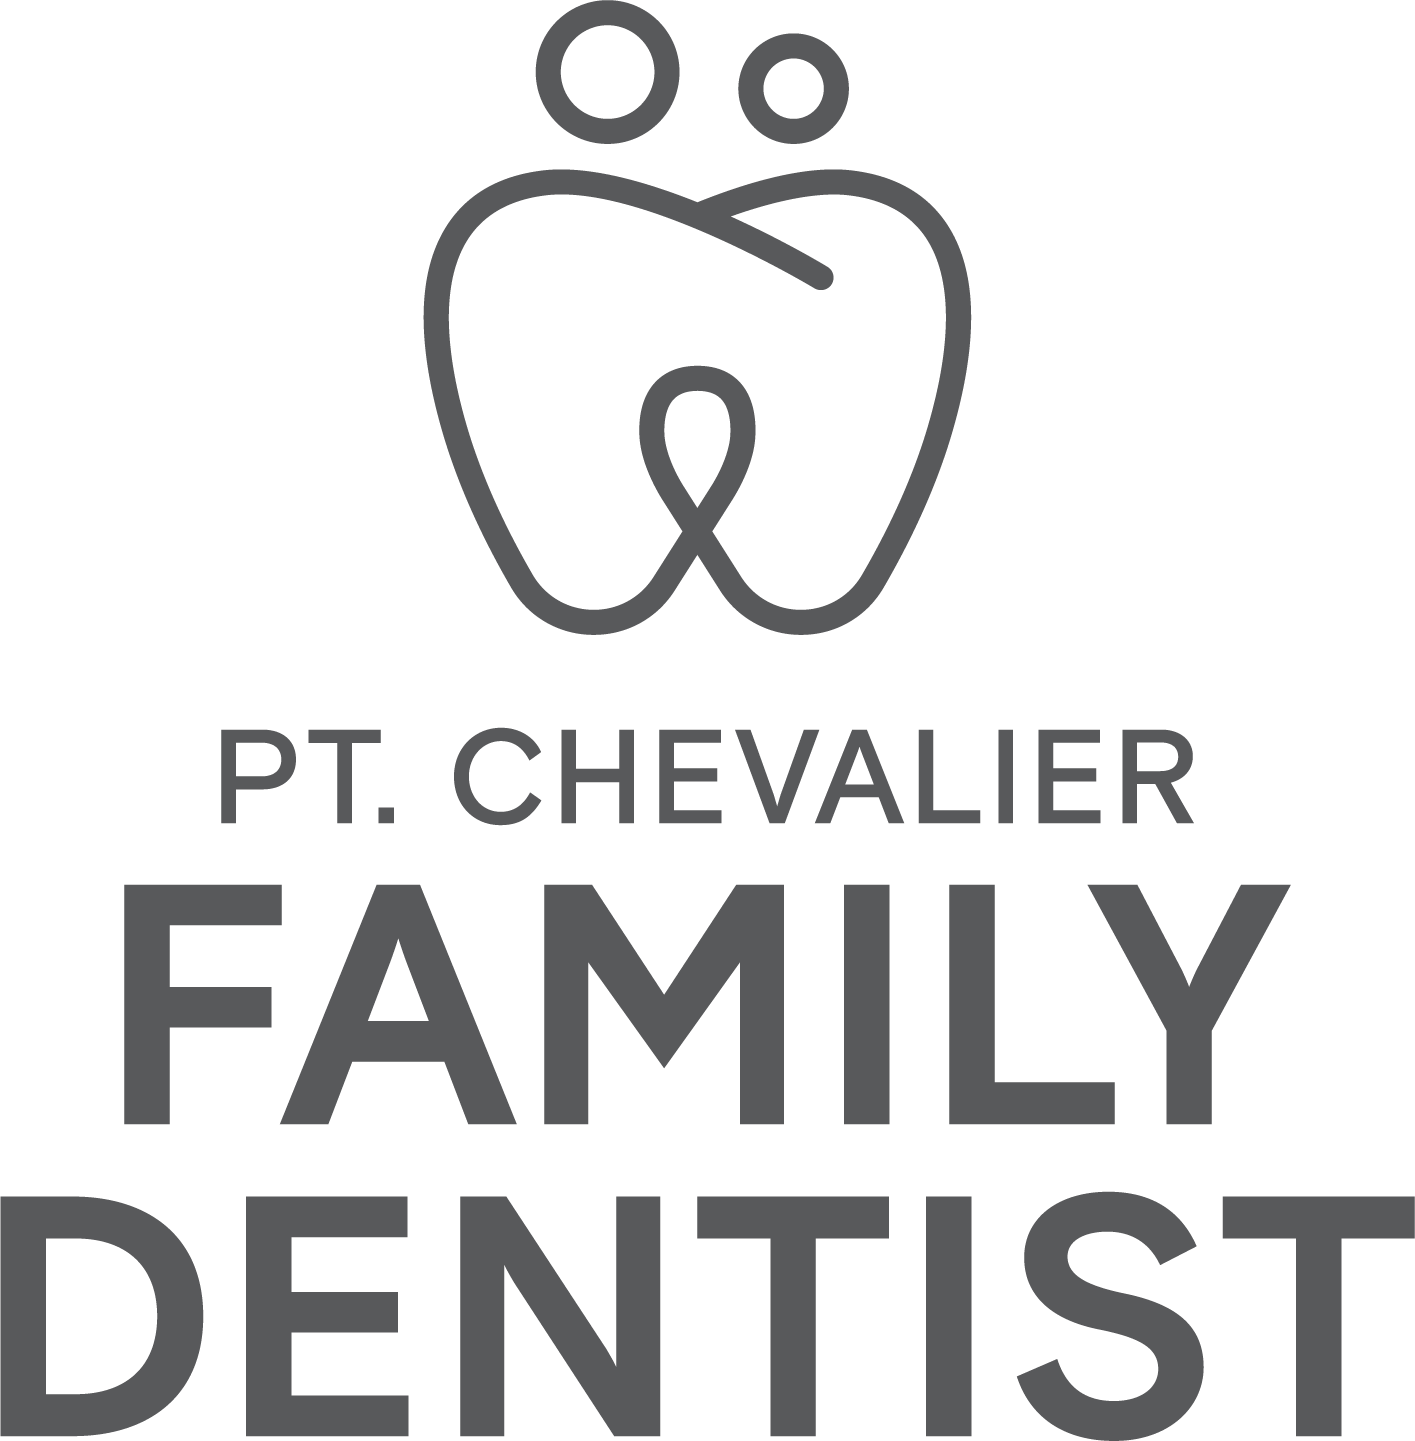 Best Dental Clinic in Pt Chevalier, Cheap Dentist in Mount Albert - Pt Chevalier Family Dentist